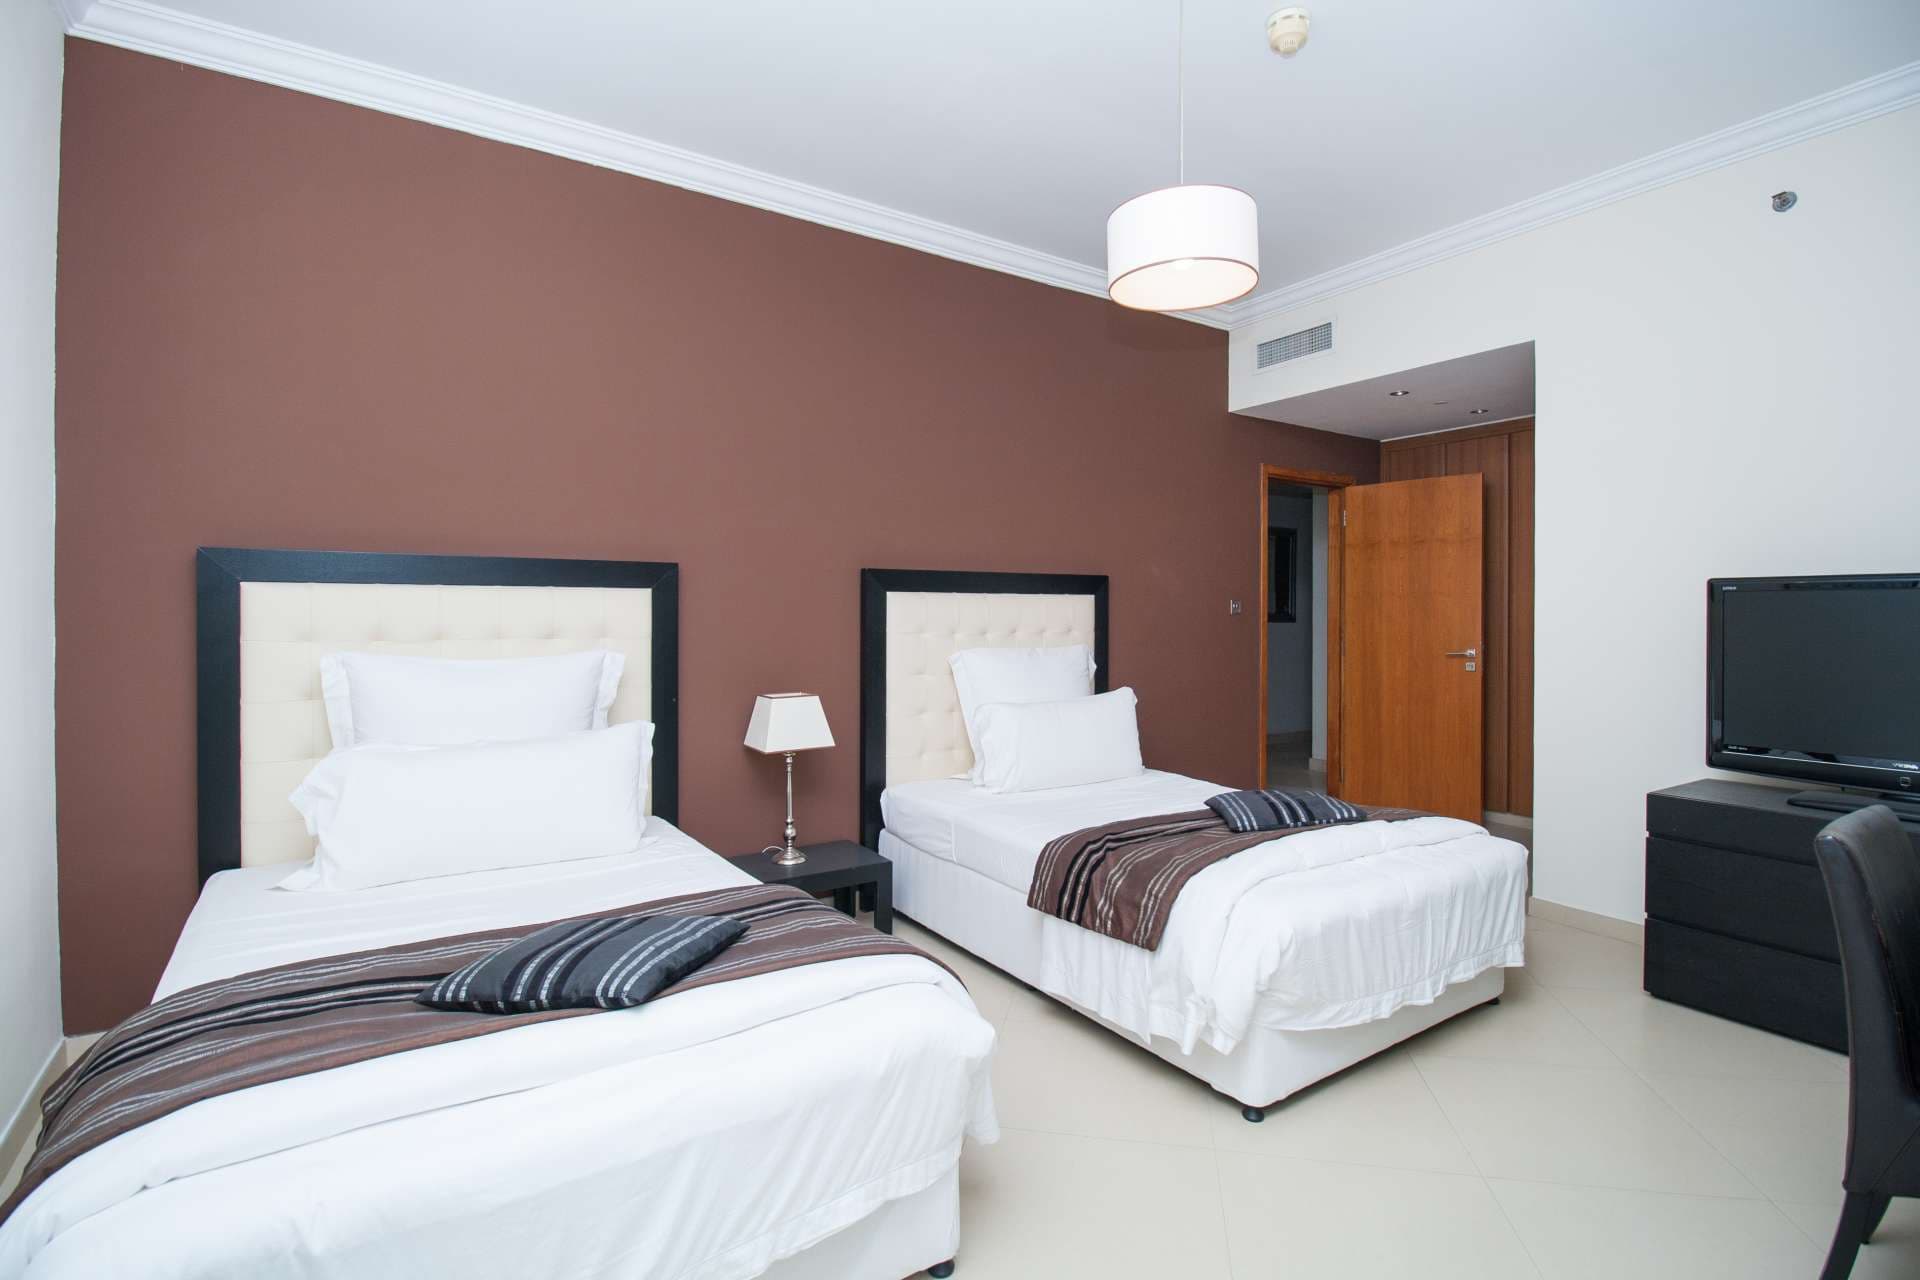 4 Bedroom Apartment For Rent Dorra Bay Lp04868 2afb98d61e2e7400.jpg